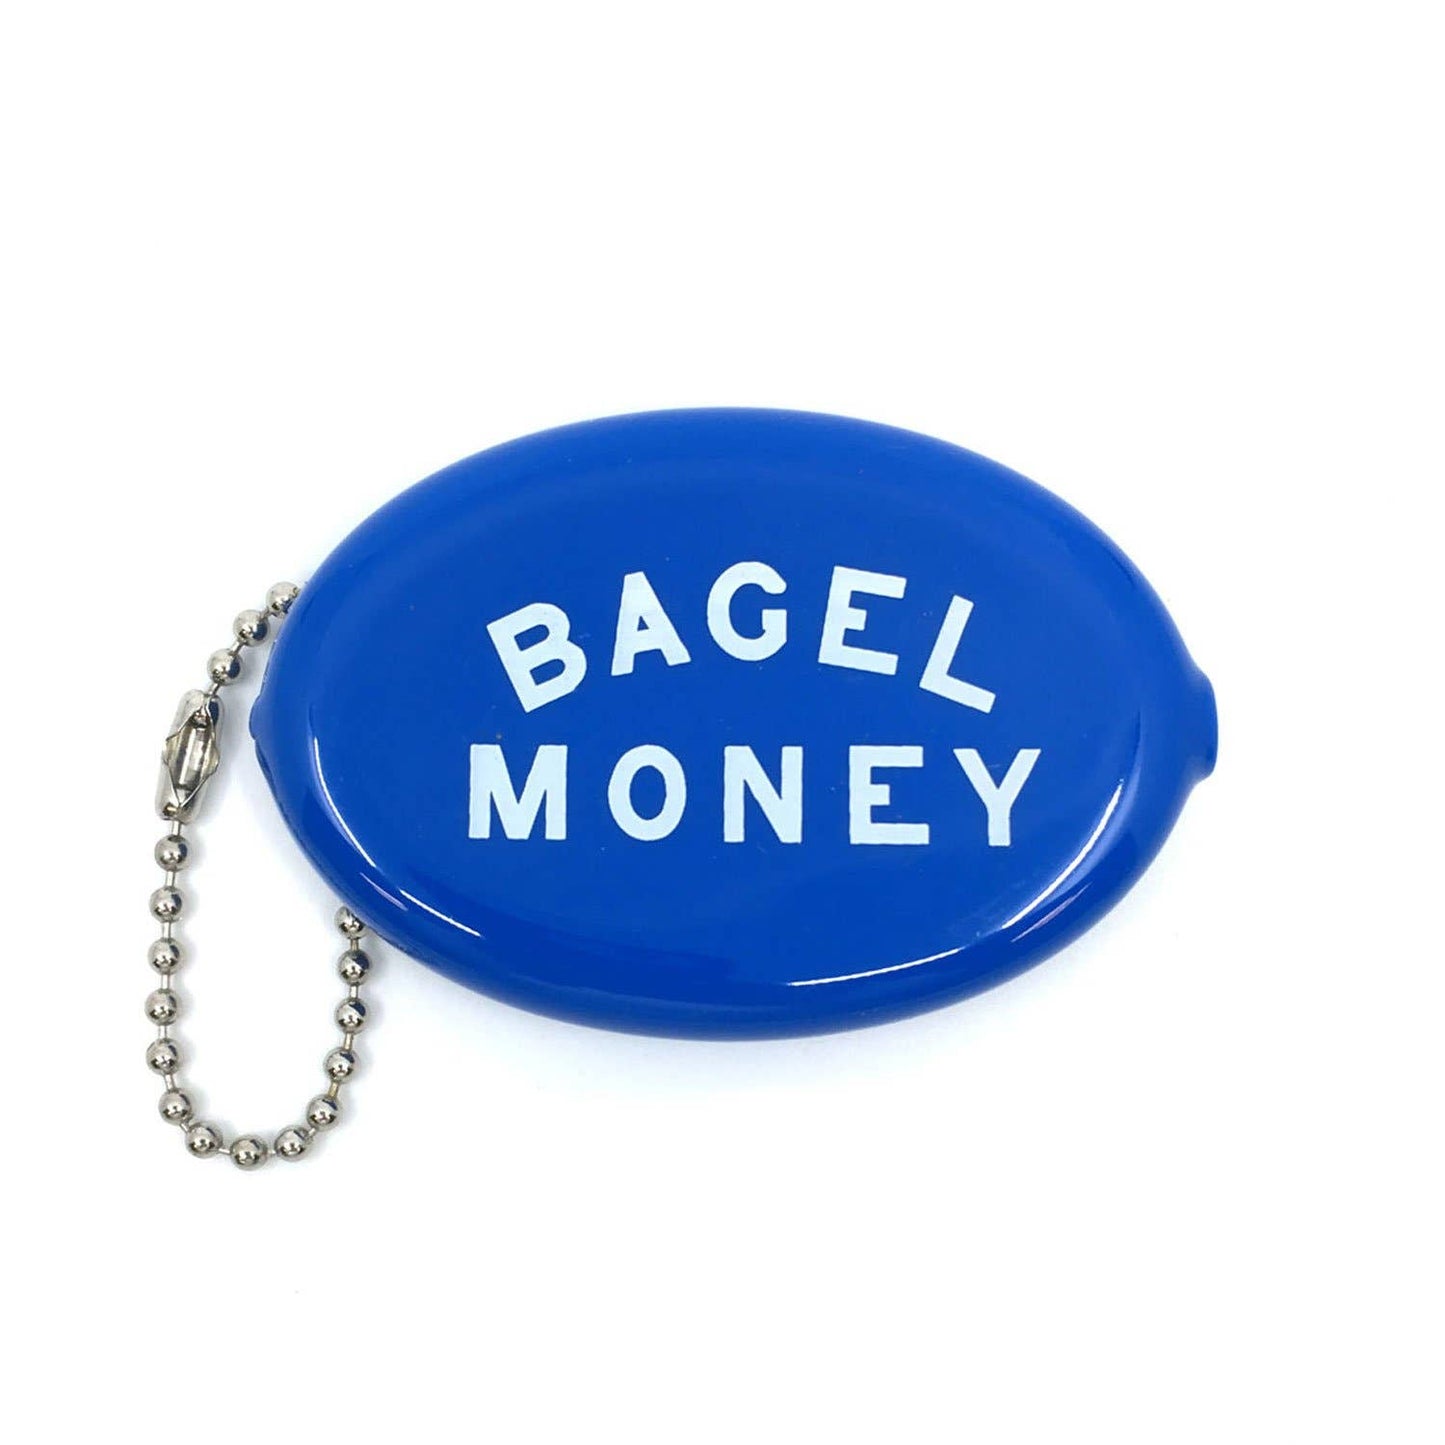 Bagel Money Coin Pouch Keychain